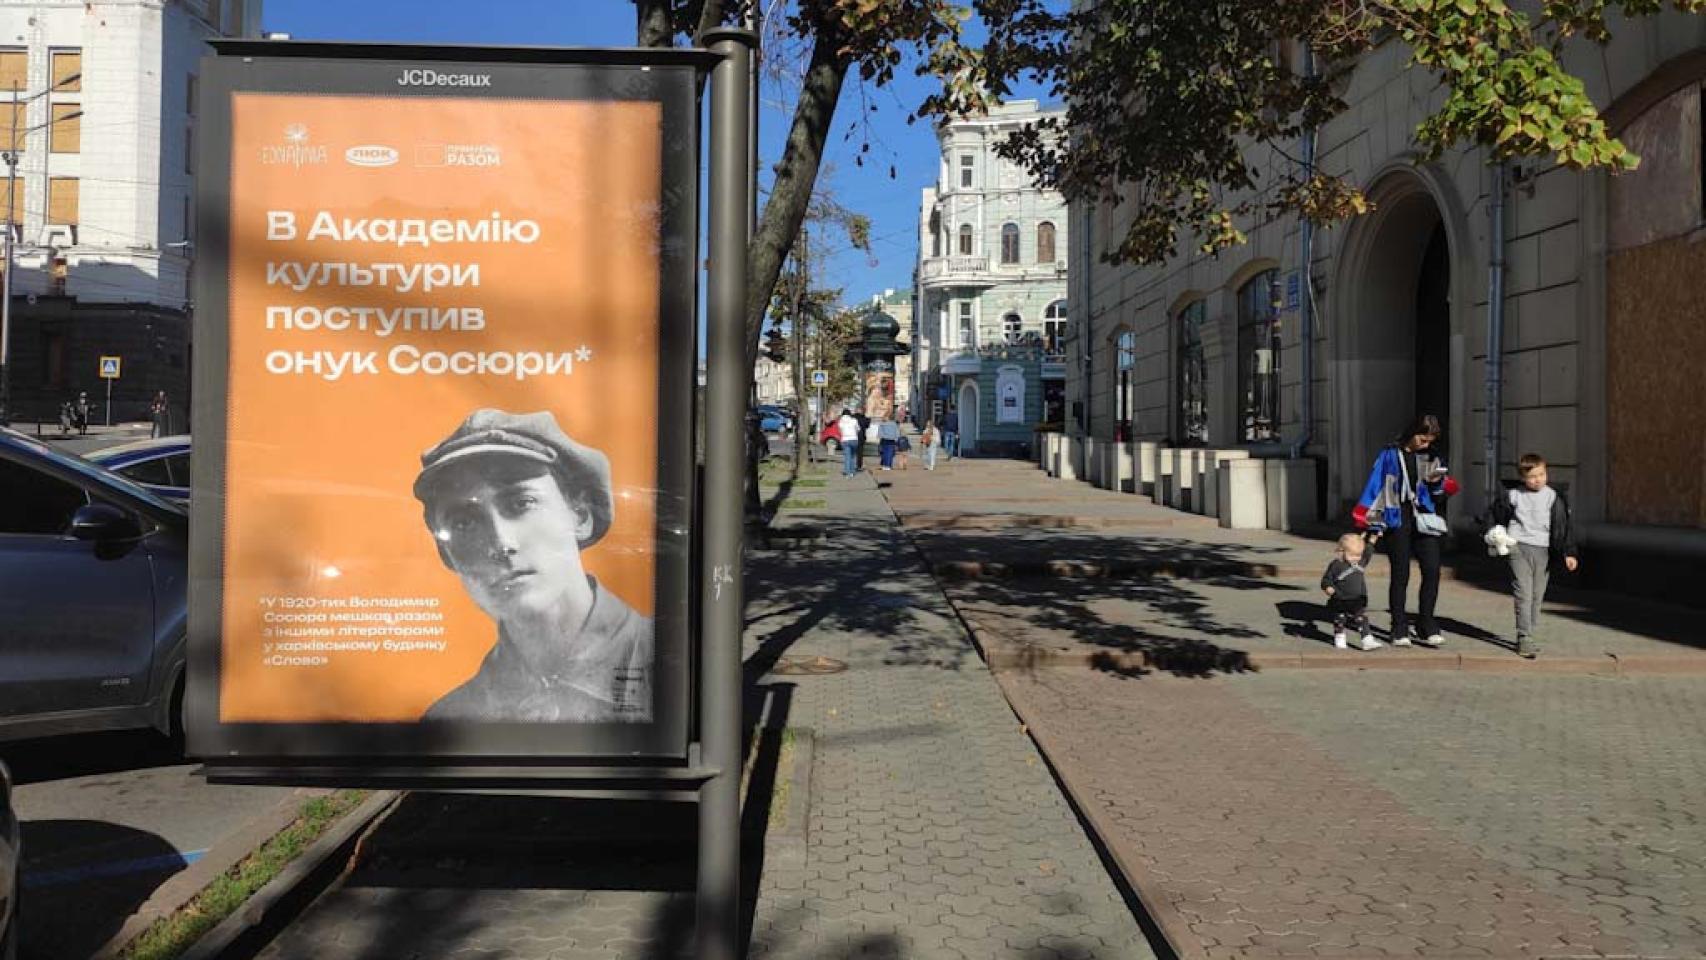 Campaña local para difundir el conocimiento sobre la cultura ucraniana local, suprimida durante la época soviética, en Járkiv (Ucrania).